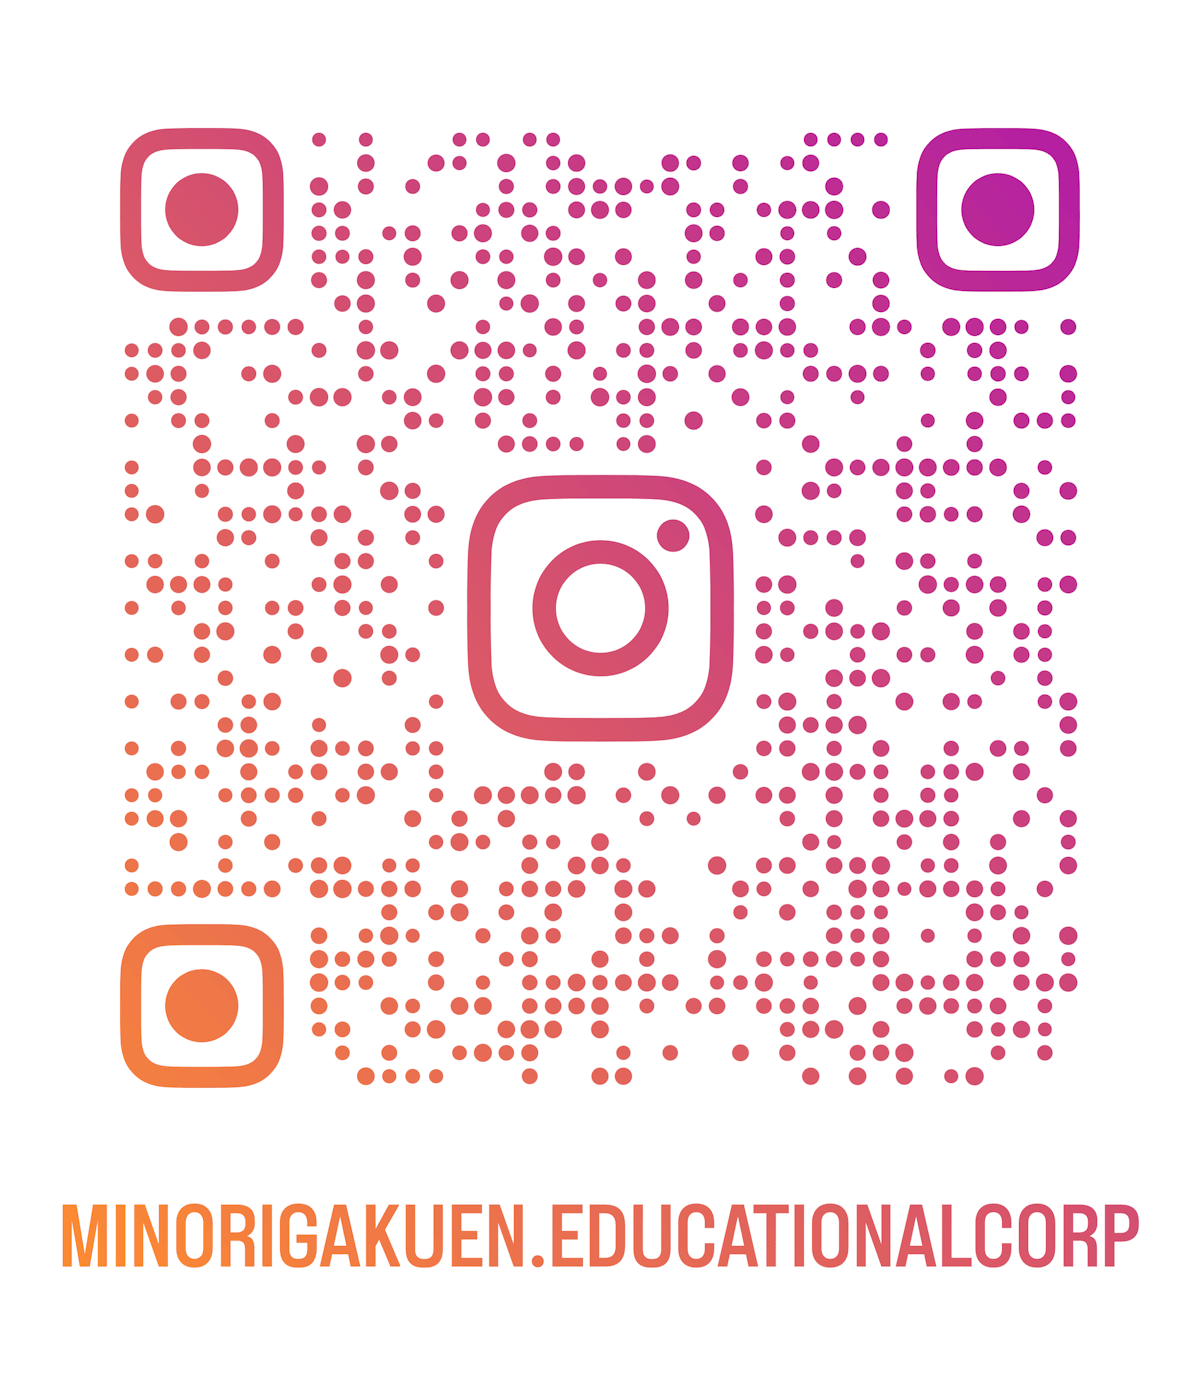 minorigakuen.educationalcorp_qr.png